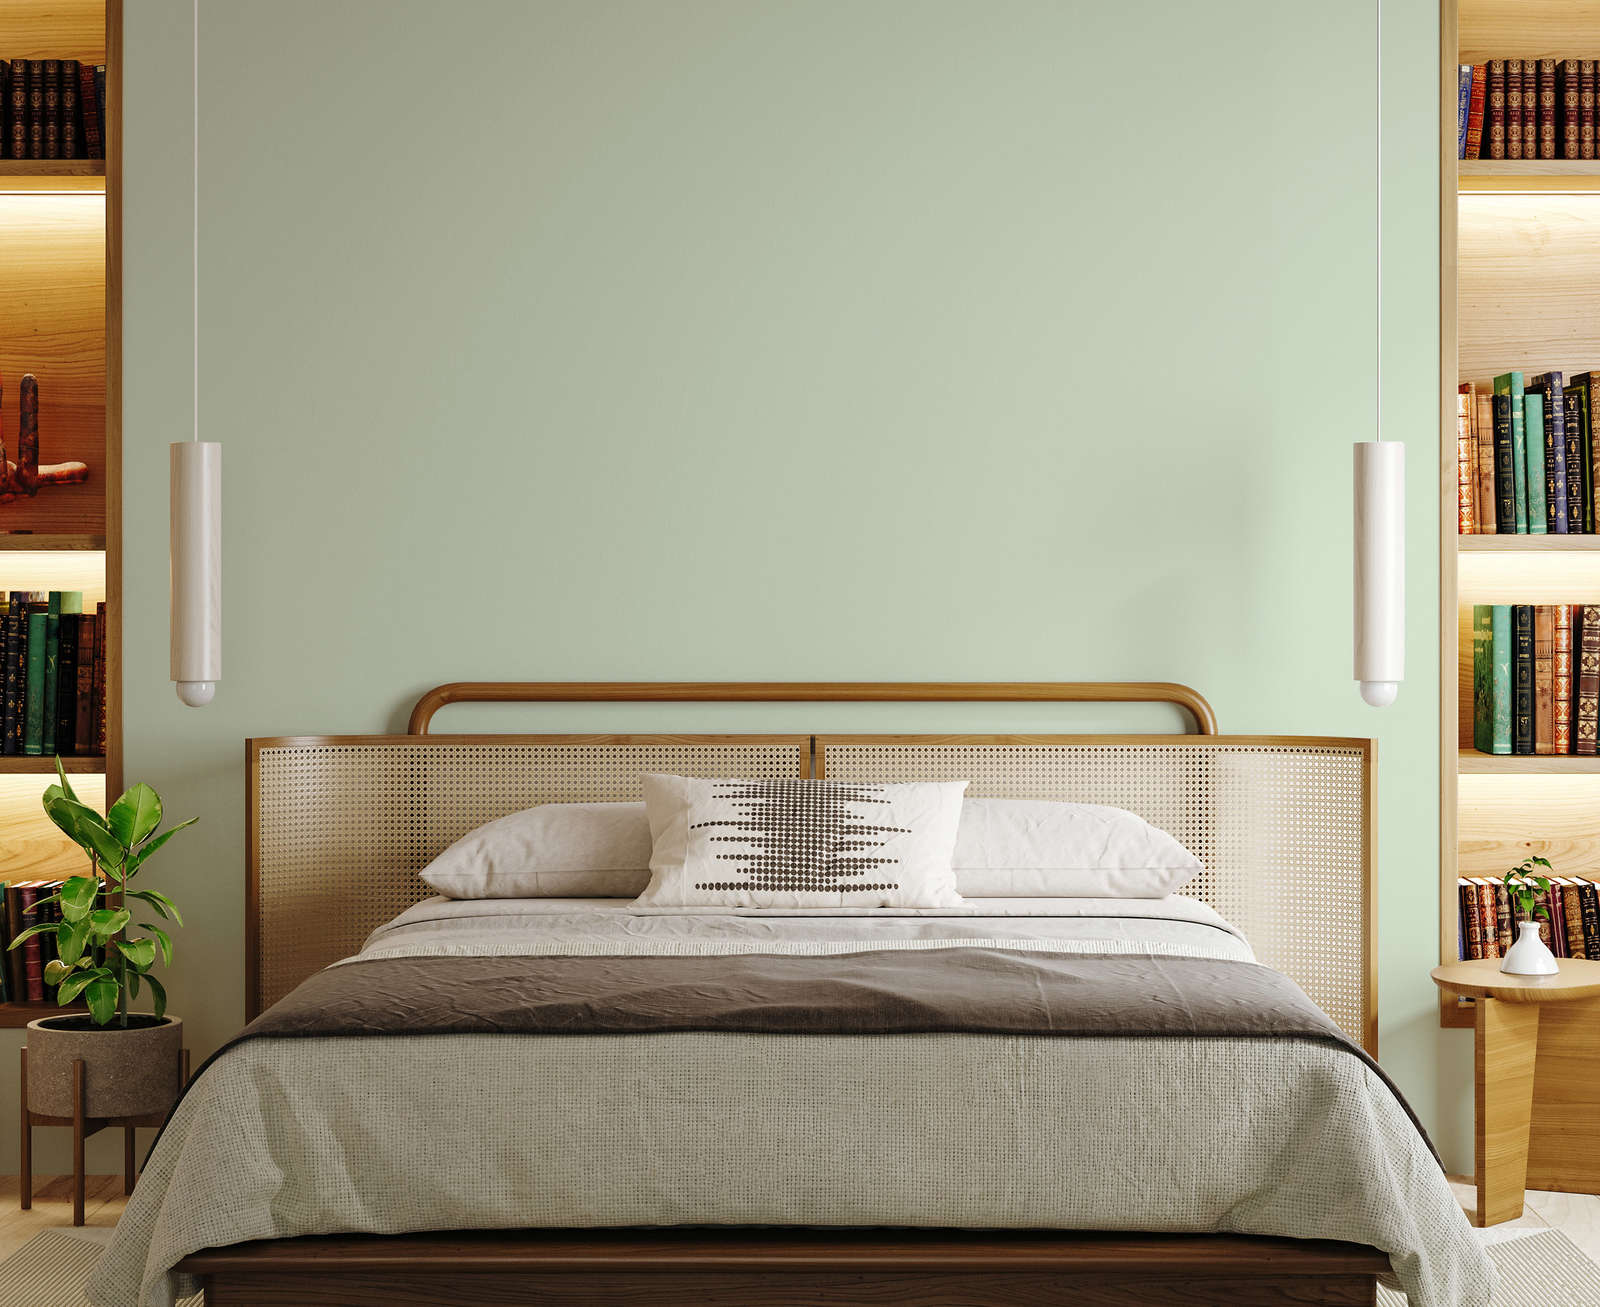             Pittura murale Premium Risveglio Verde Pastello »Sweet Sage« NW400 – 2,5 litri
        